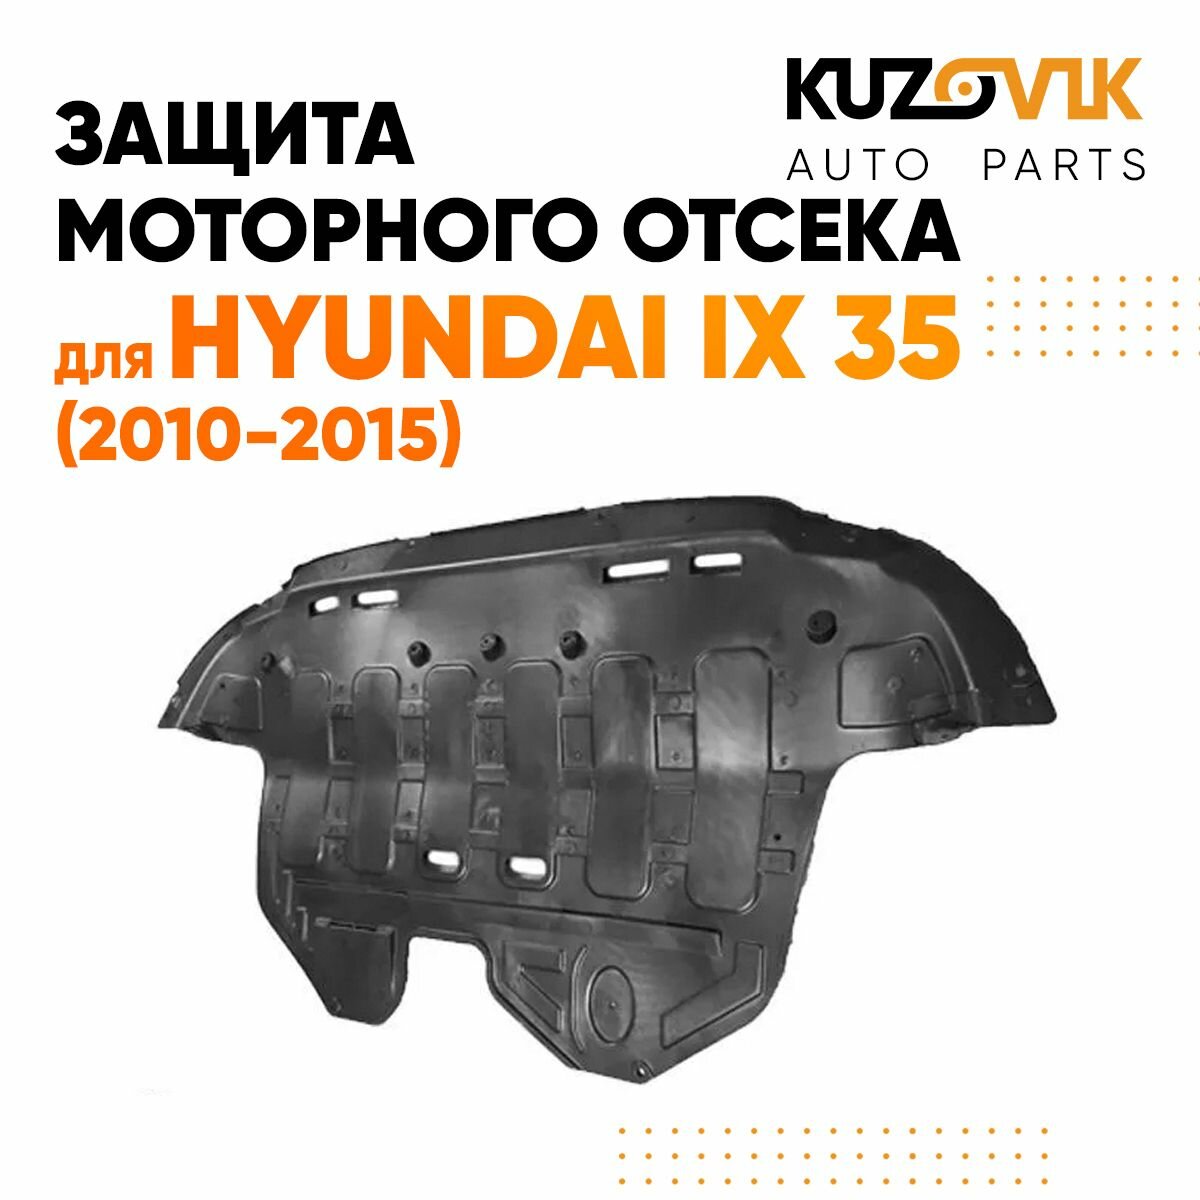 Защита пыльник двигателя Хендай Hyundai ix35 (2010-2015) пластик